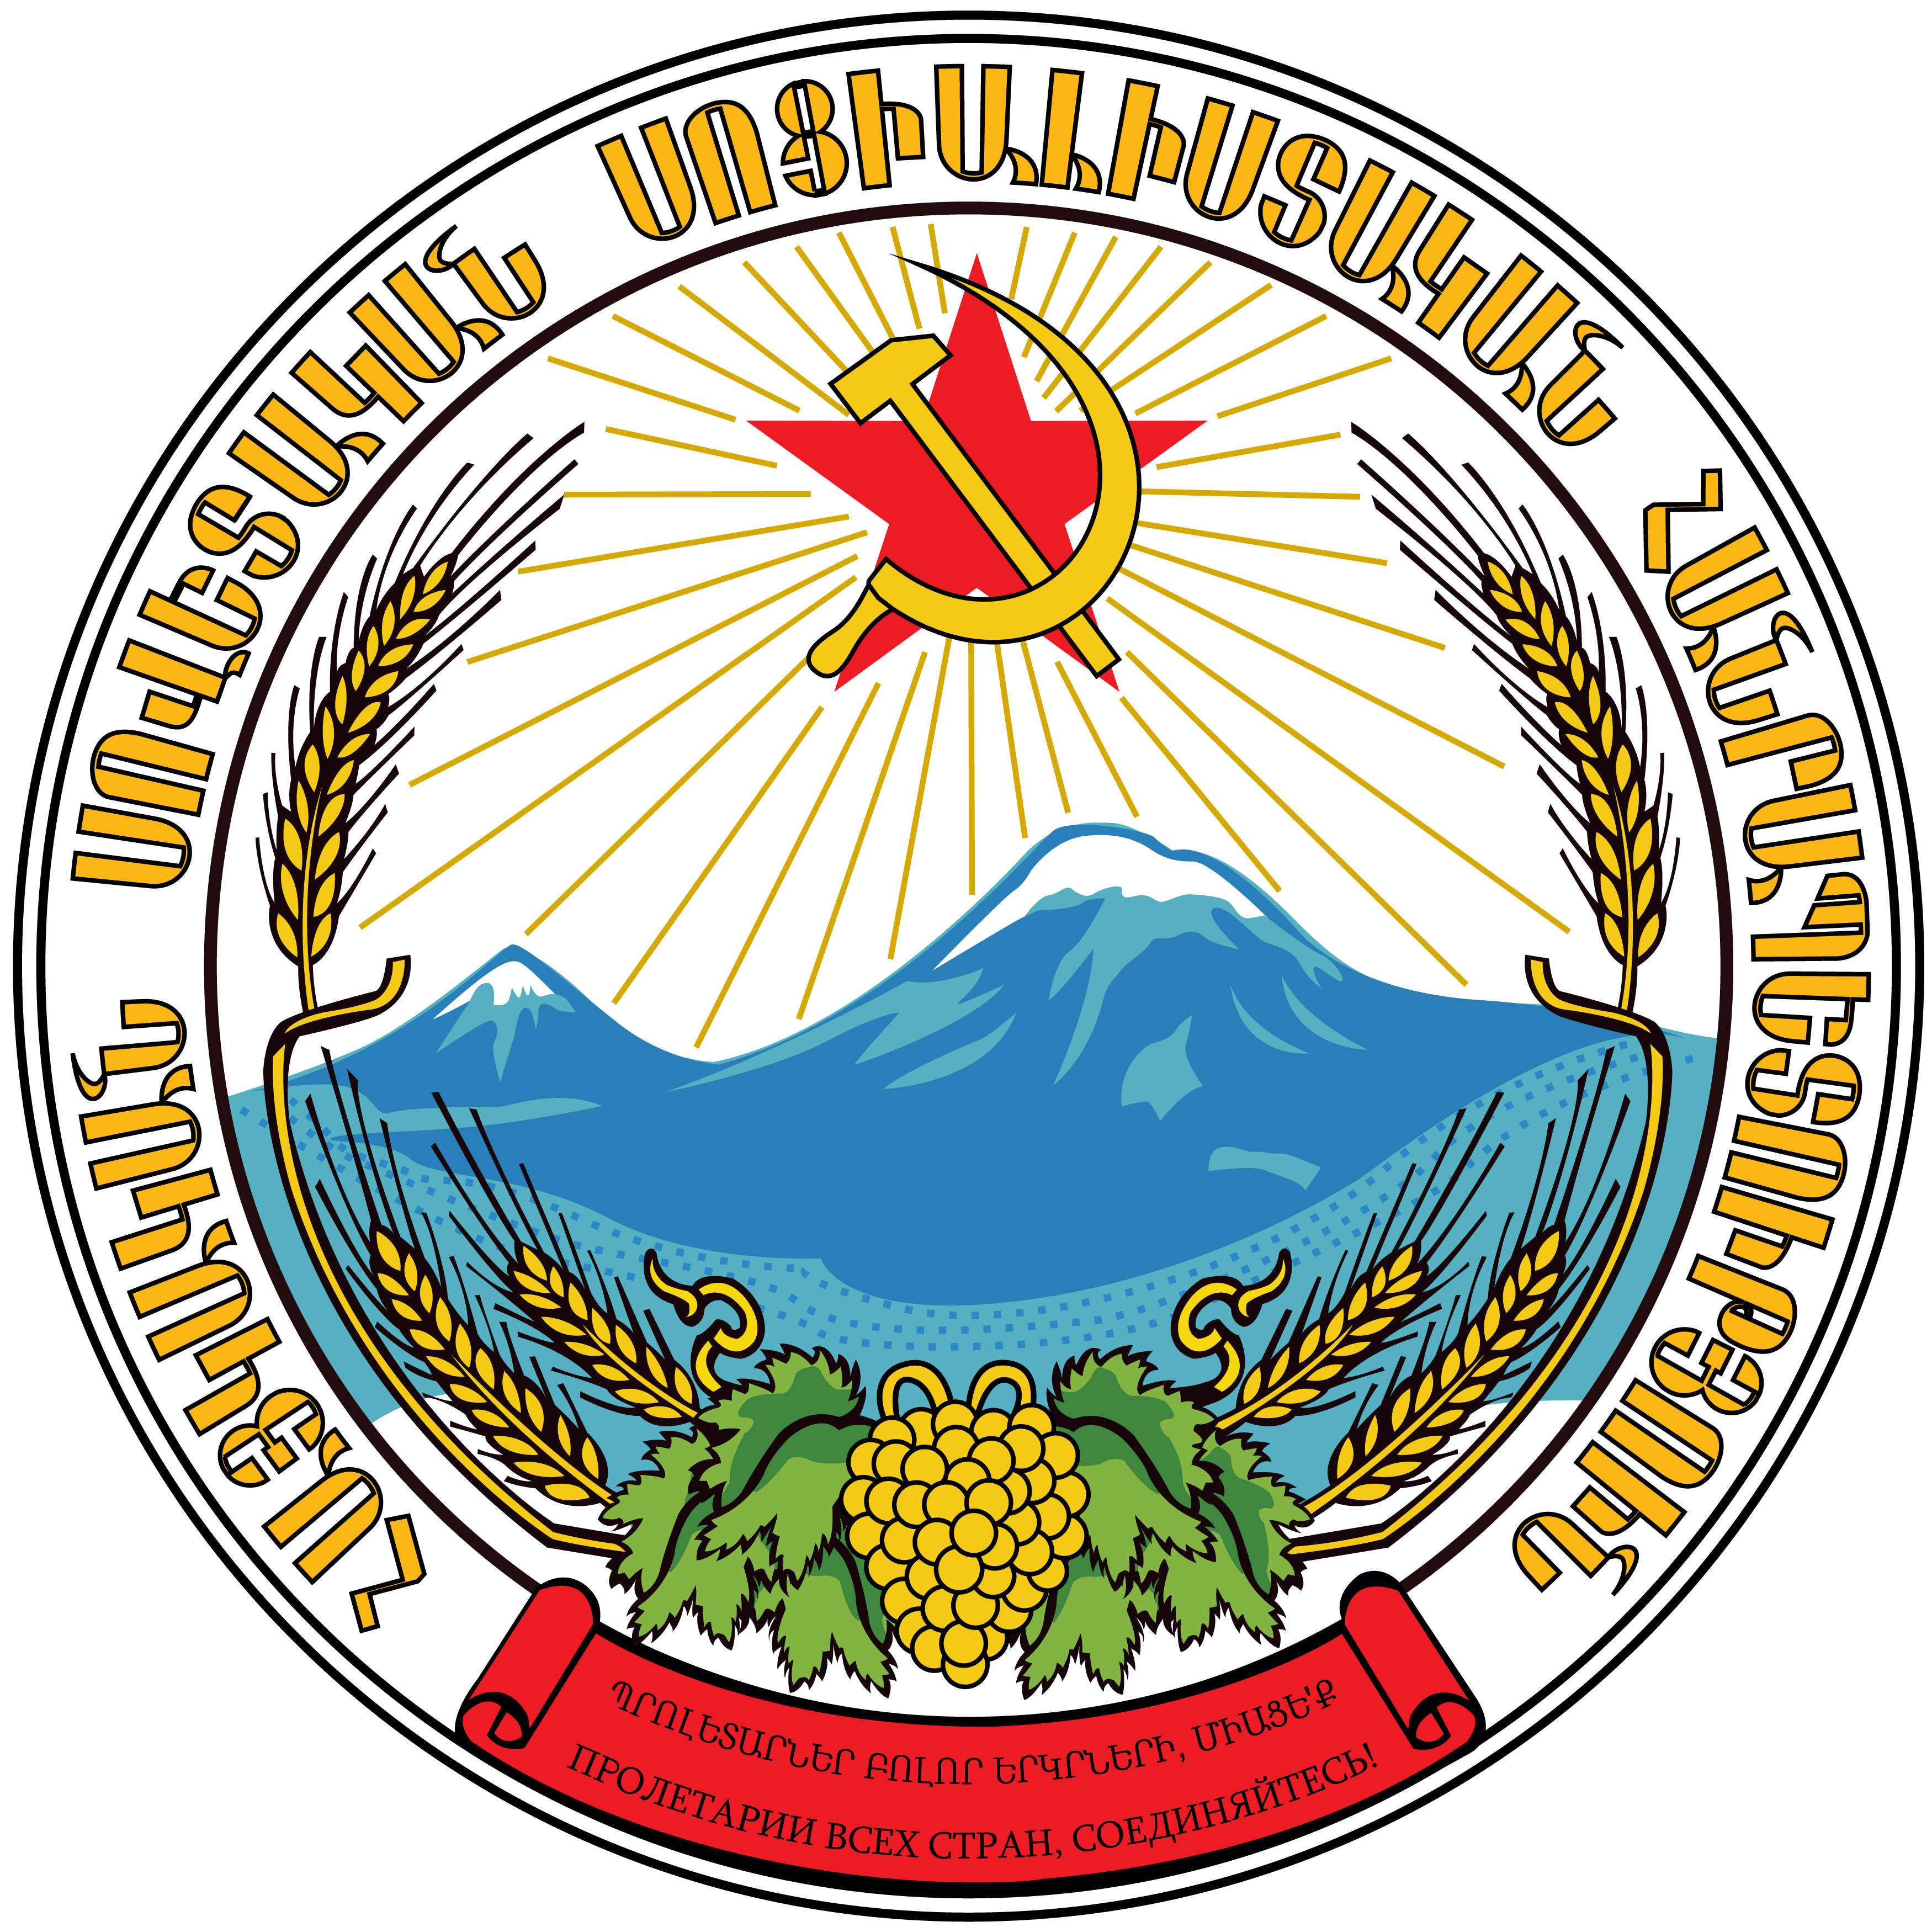 亚美尼亚苏联时期国徽